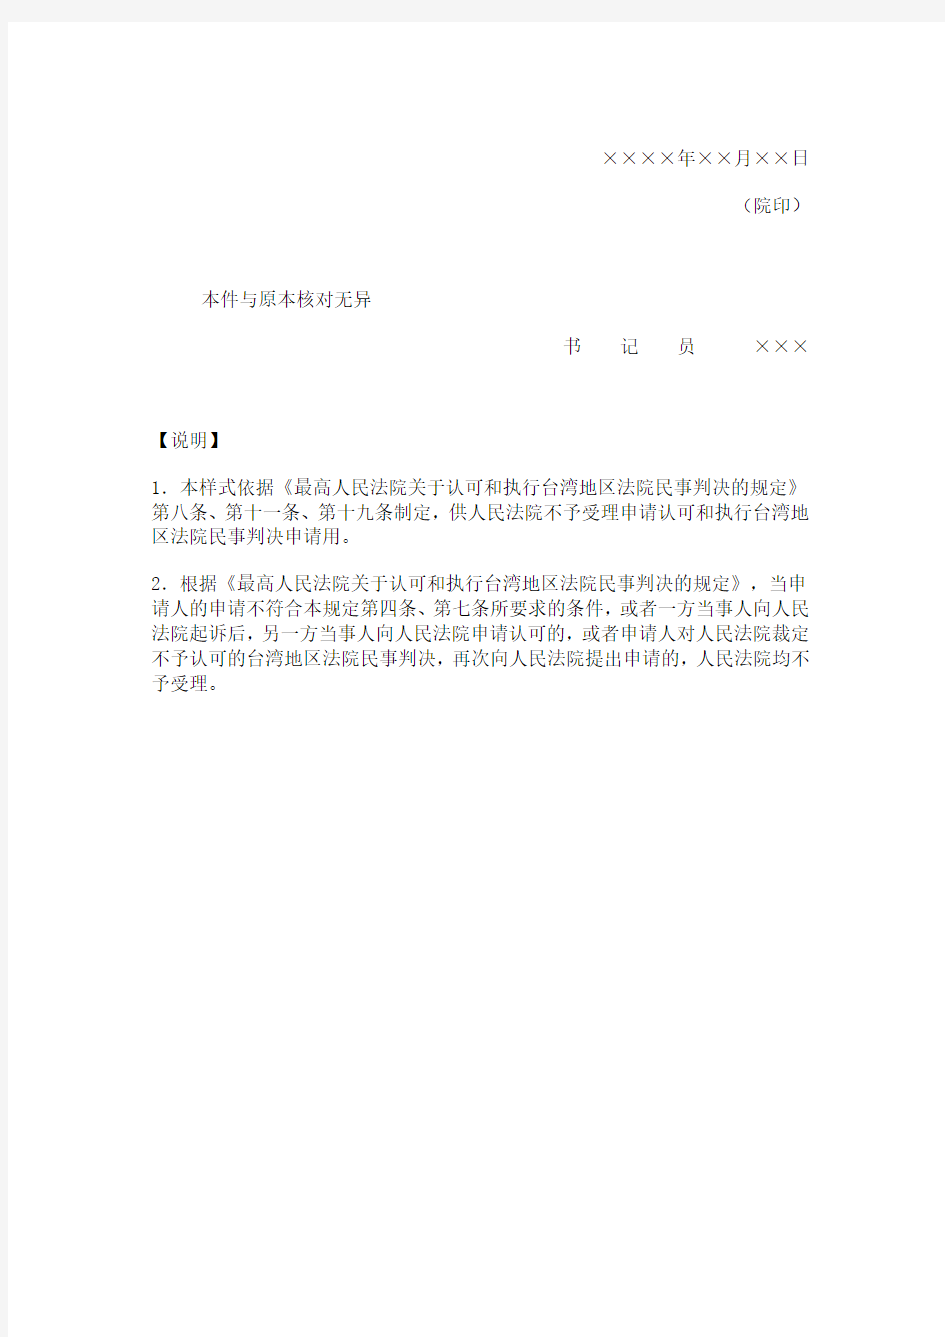 民事裁定书(不予受理认可和执行台湾地区法院民事判决申请用)